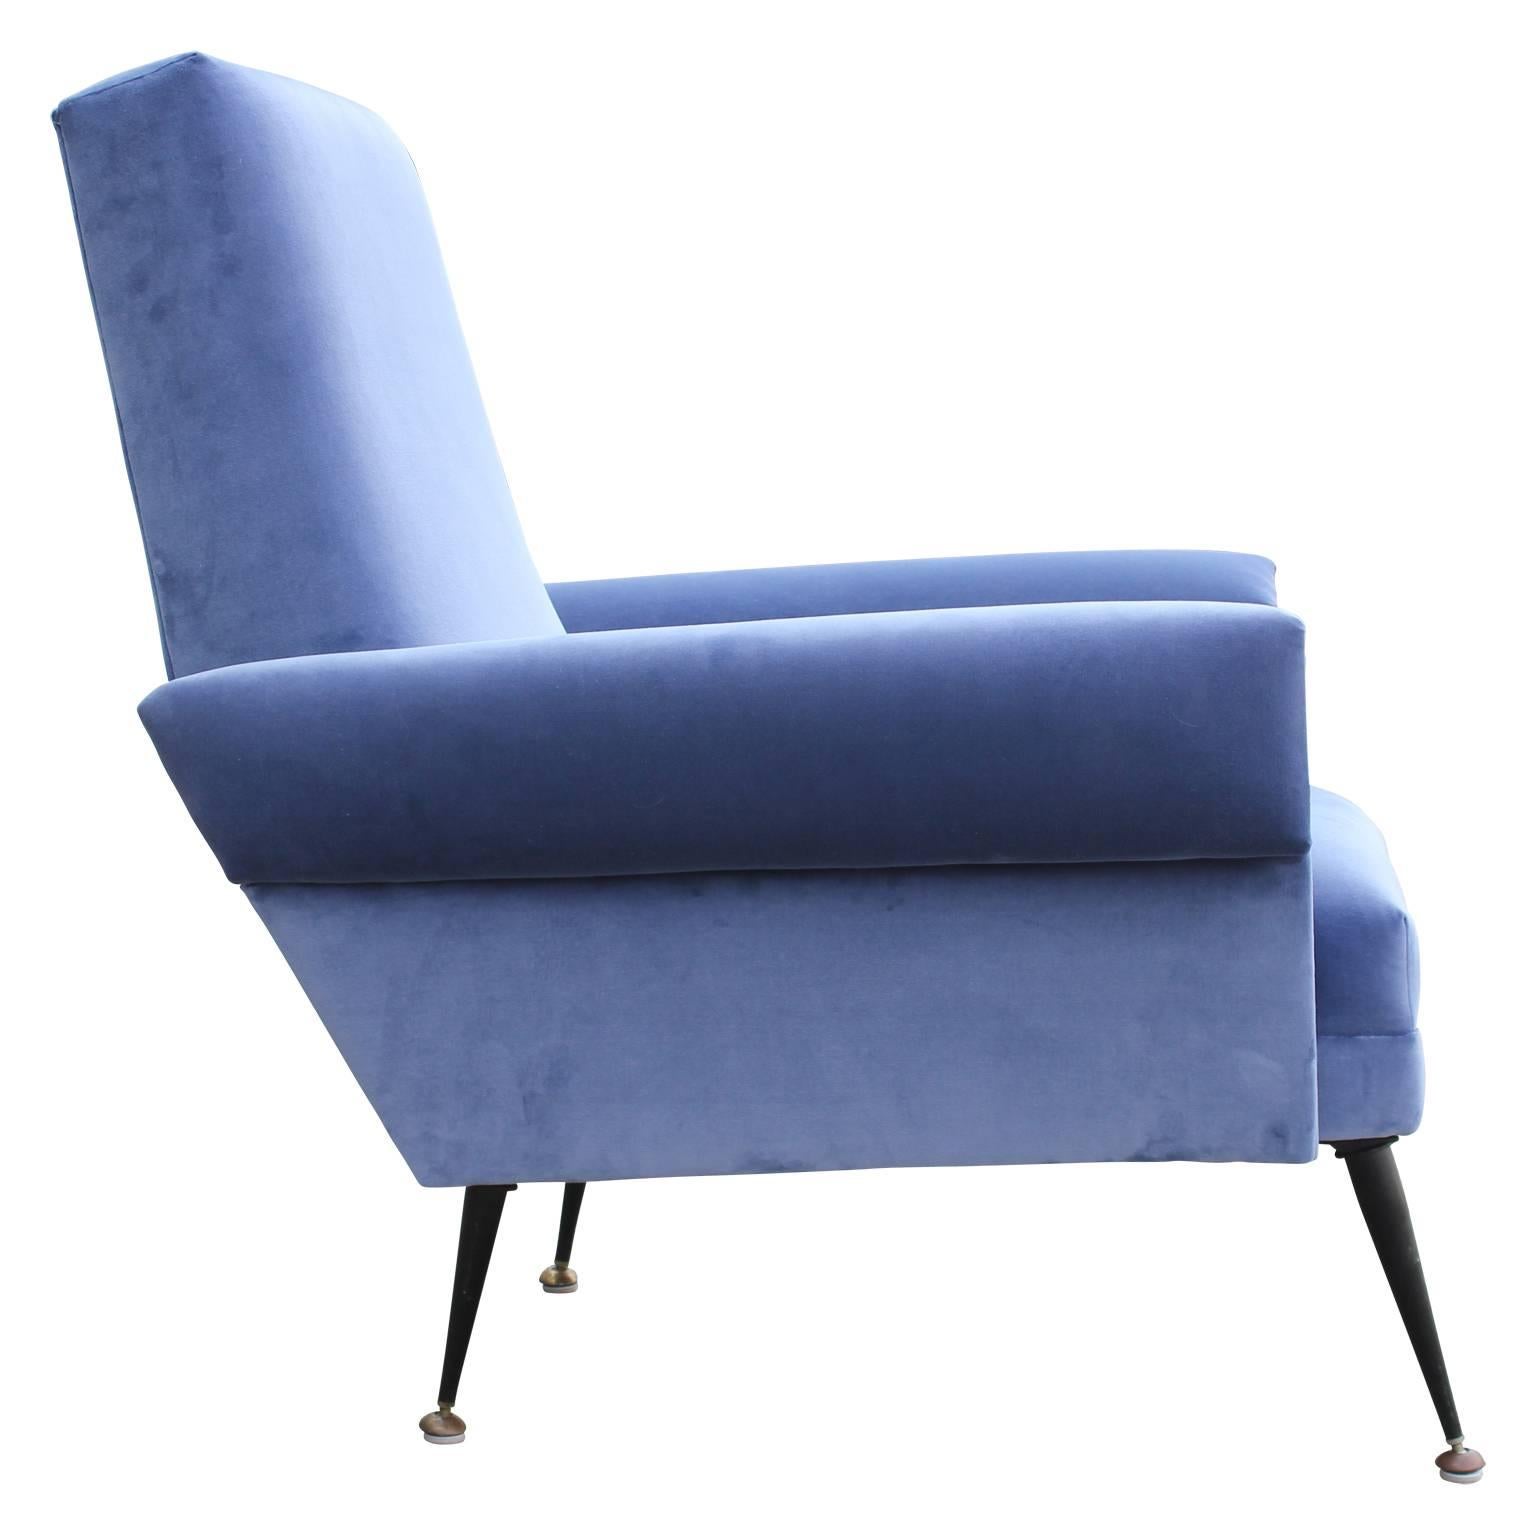 Pair of Modern Arflex Style Italian Lounge Chairs in Blue Kravet Velvet 1